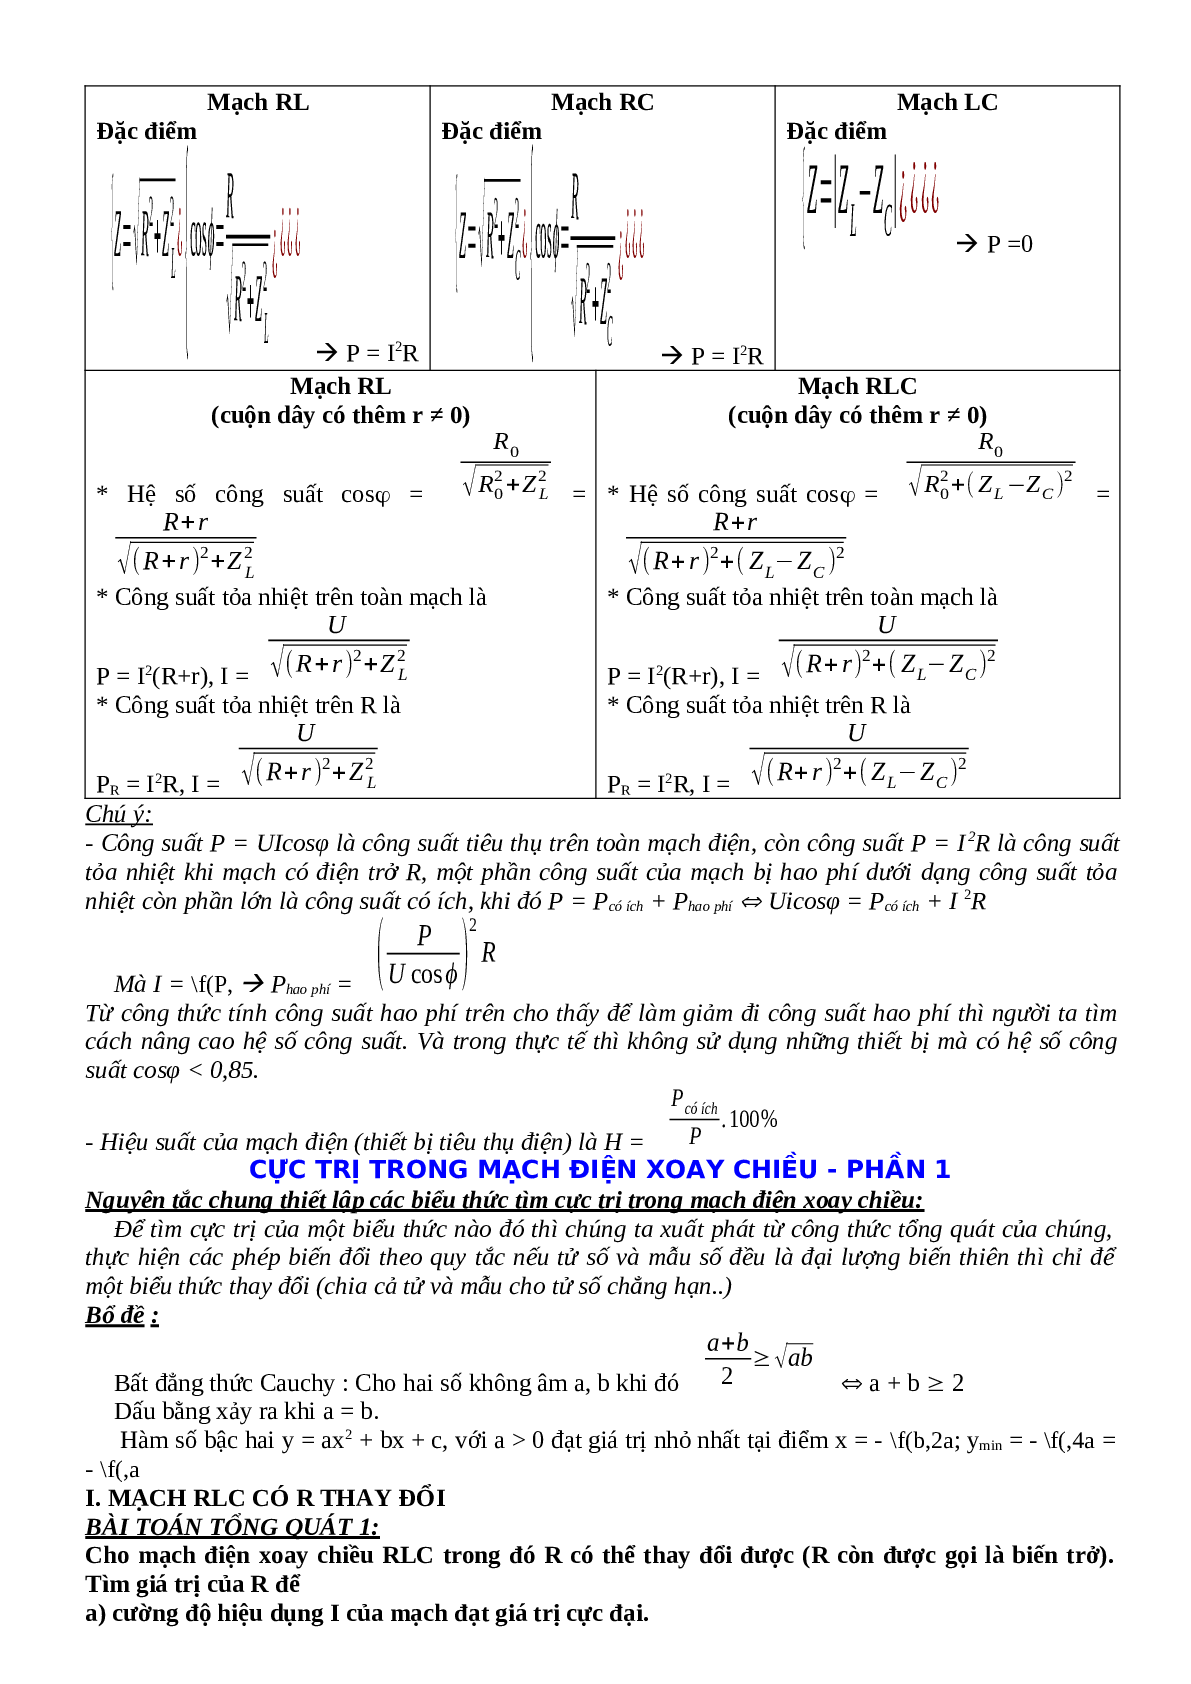 Lý thuyết, bài tập về Điện xoay chiều hay nhất - Vật lí 12 (trang 8)